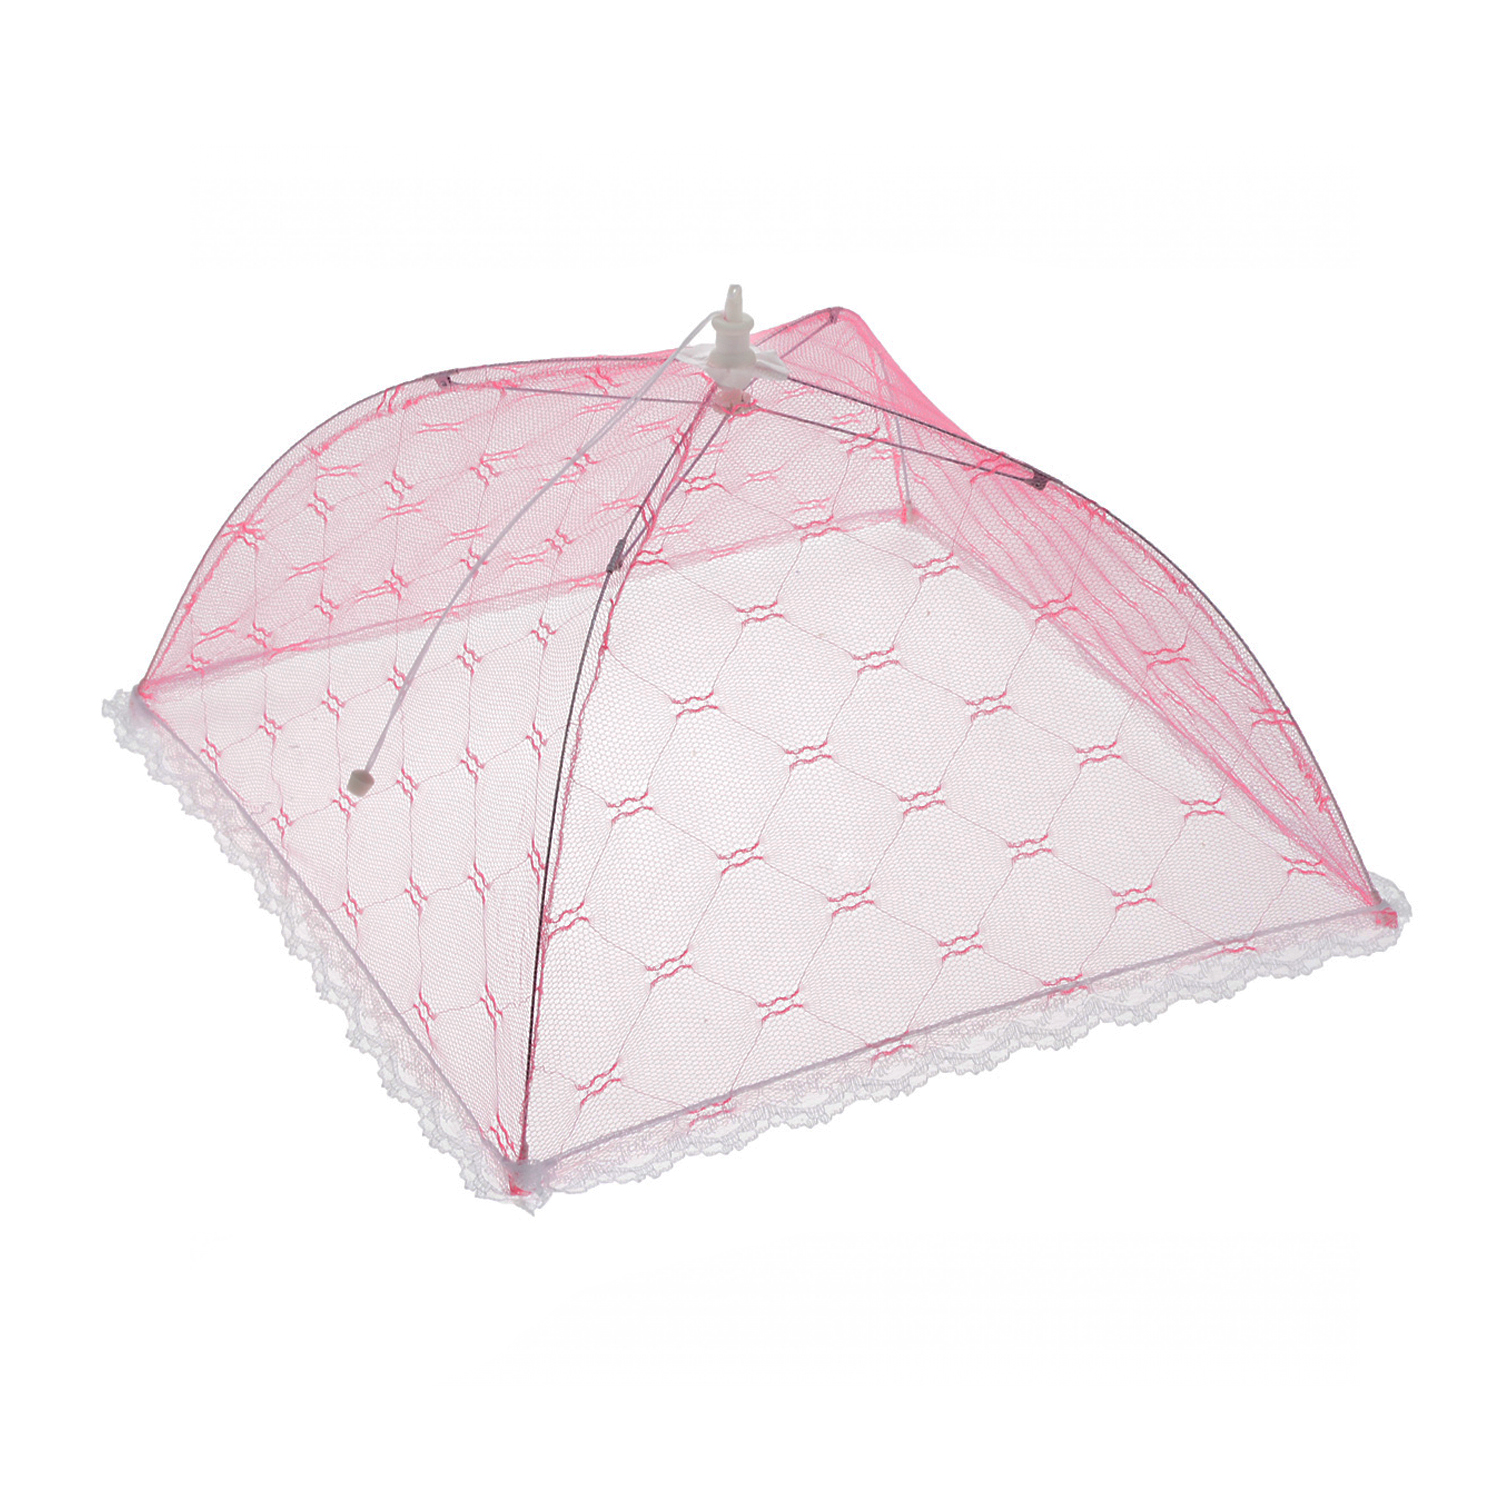 Зонтик-колпак Rabizy для защиты еды от насекомых розовый - фото 1